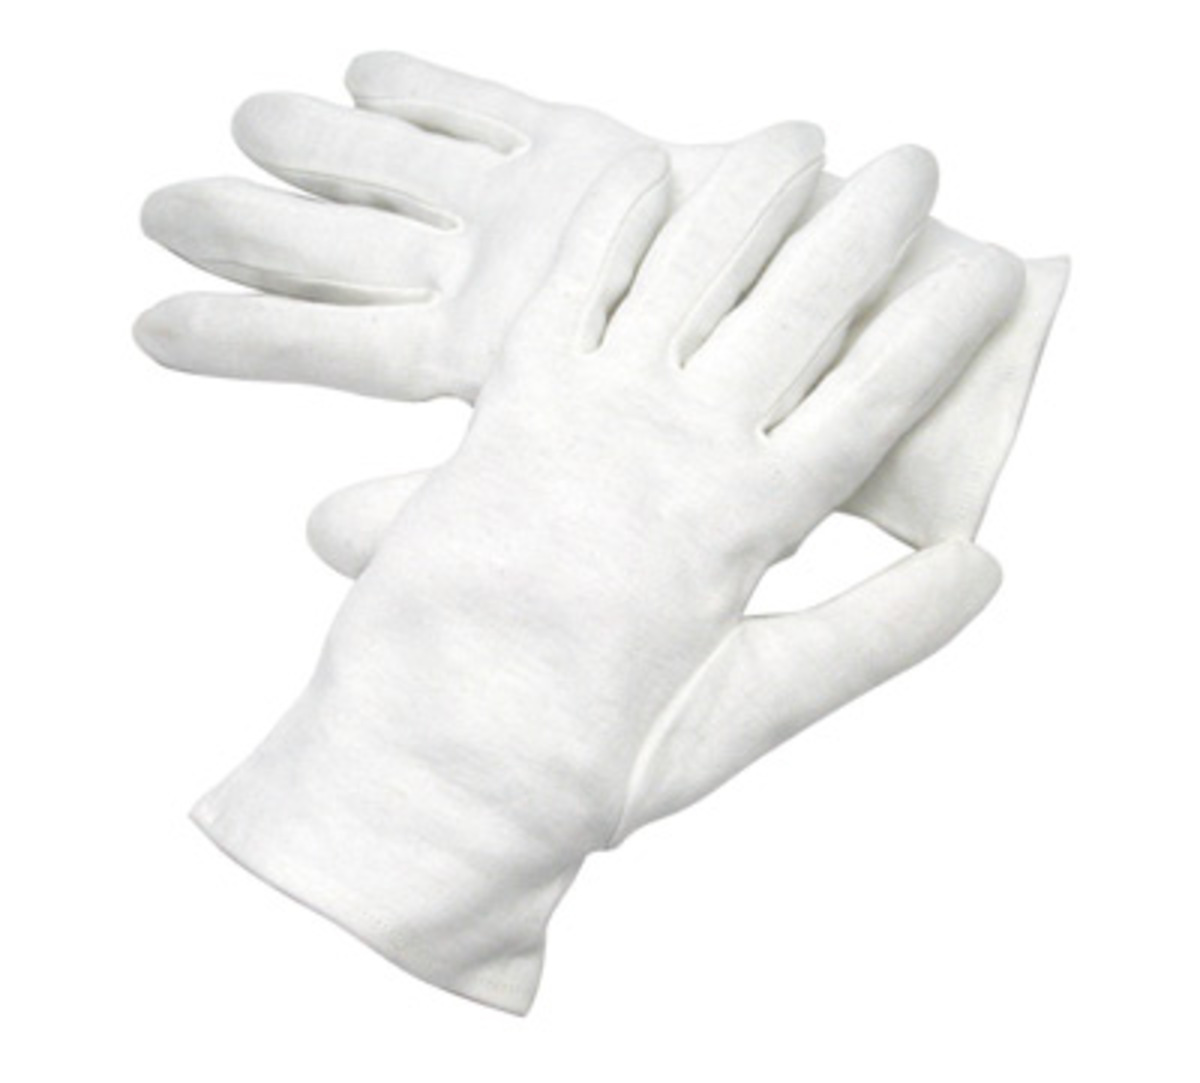 Inspection Gloves for sale online